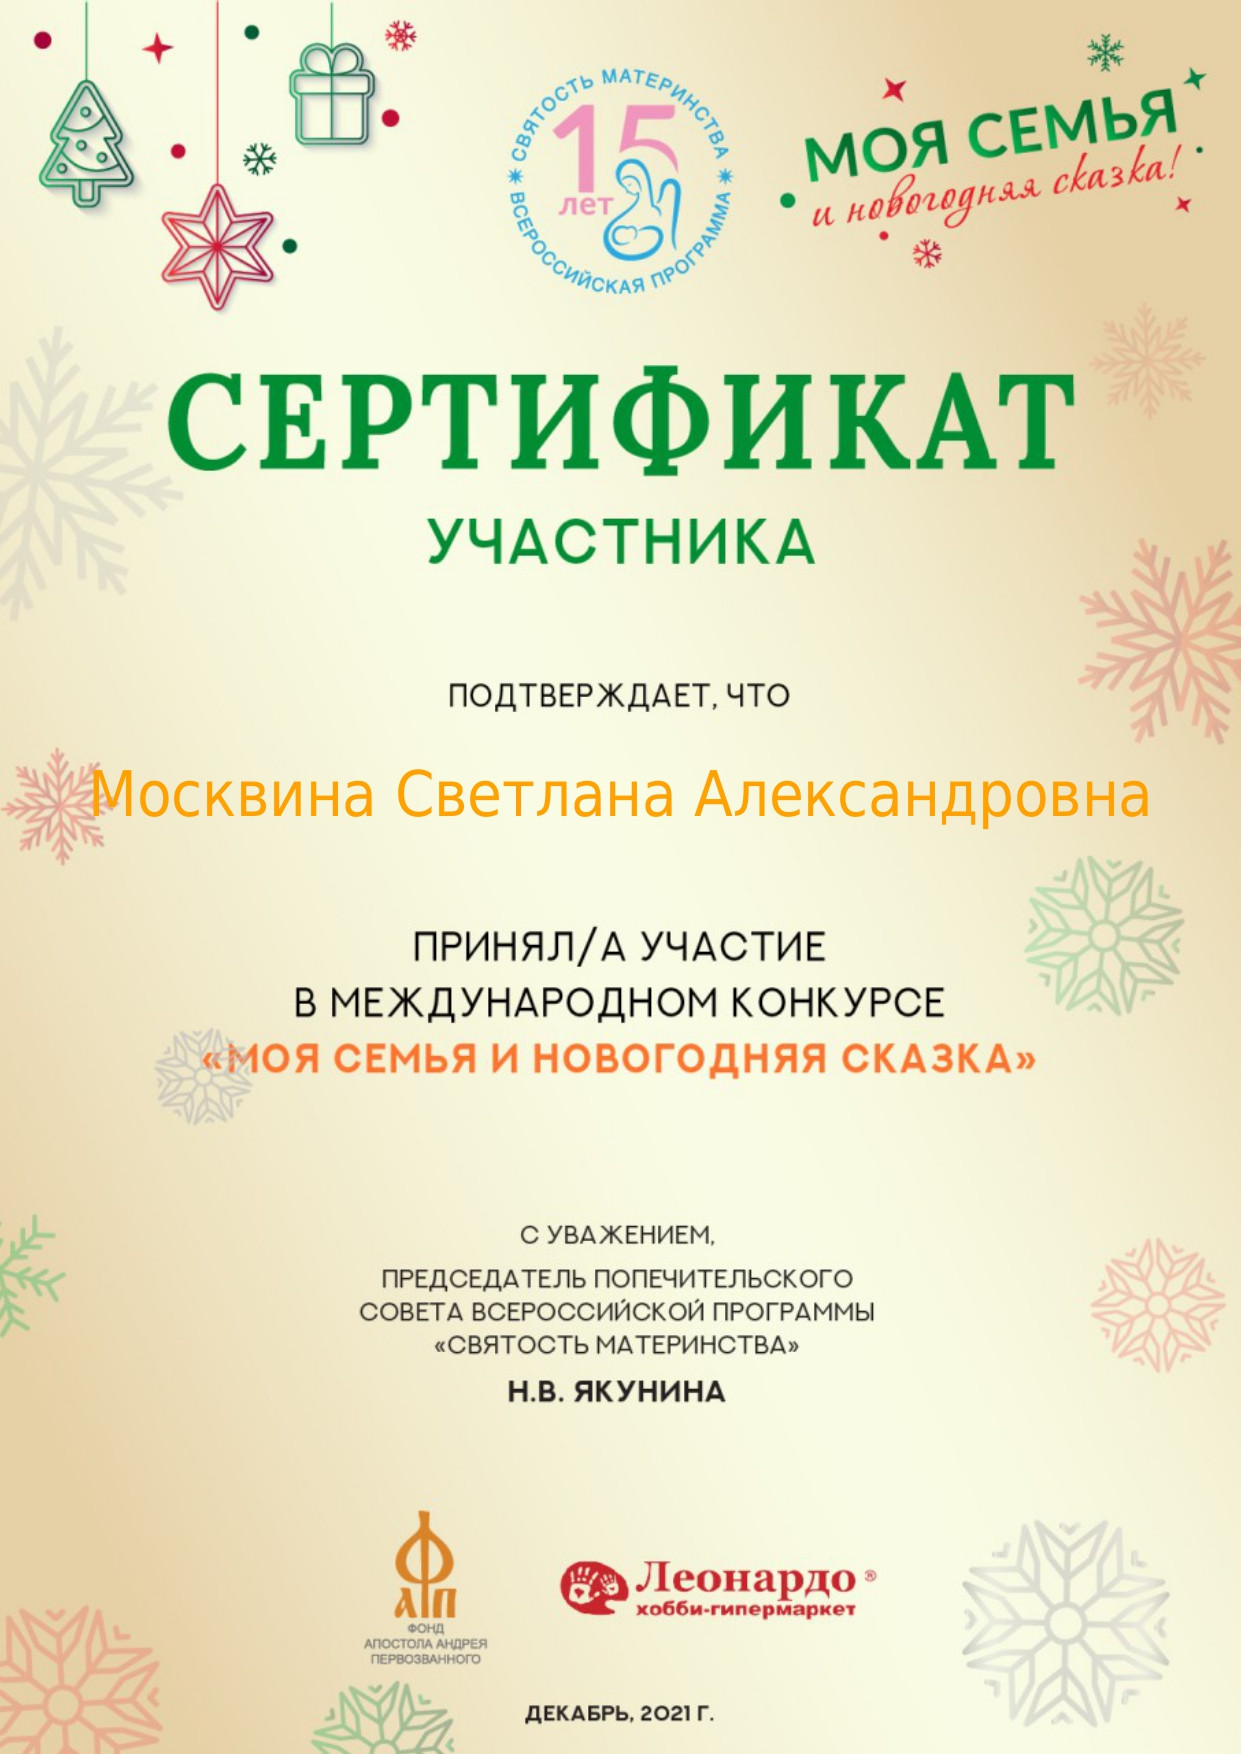 моя-семья-и-новогодняя-сказка-сертификат_page-0001